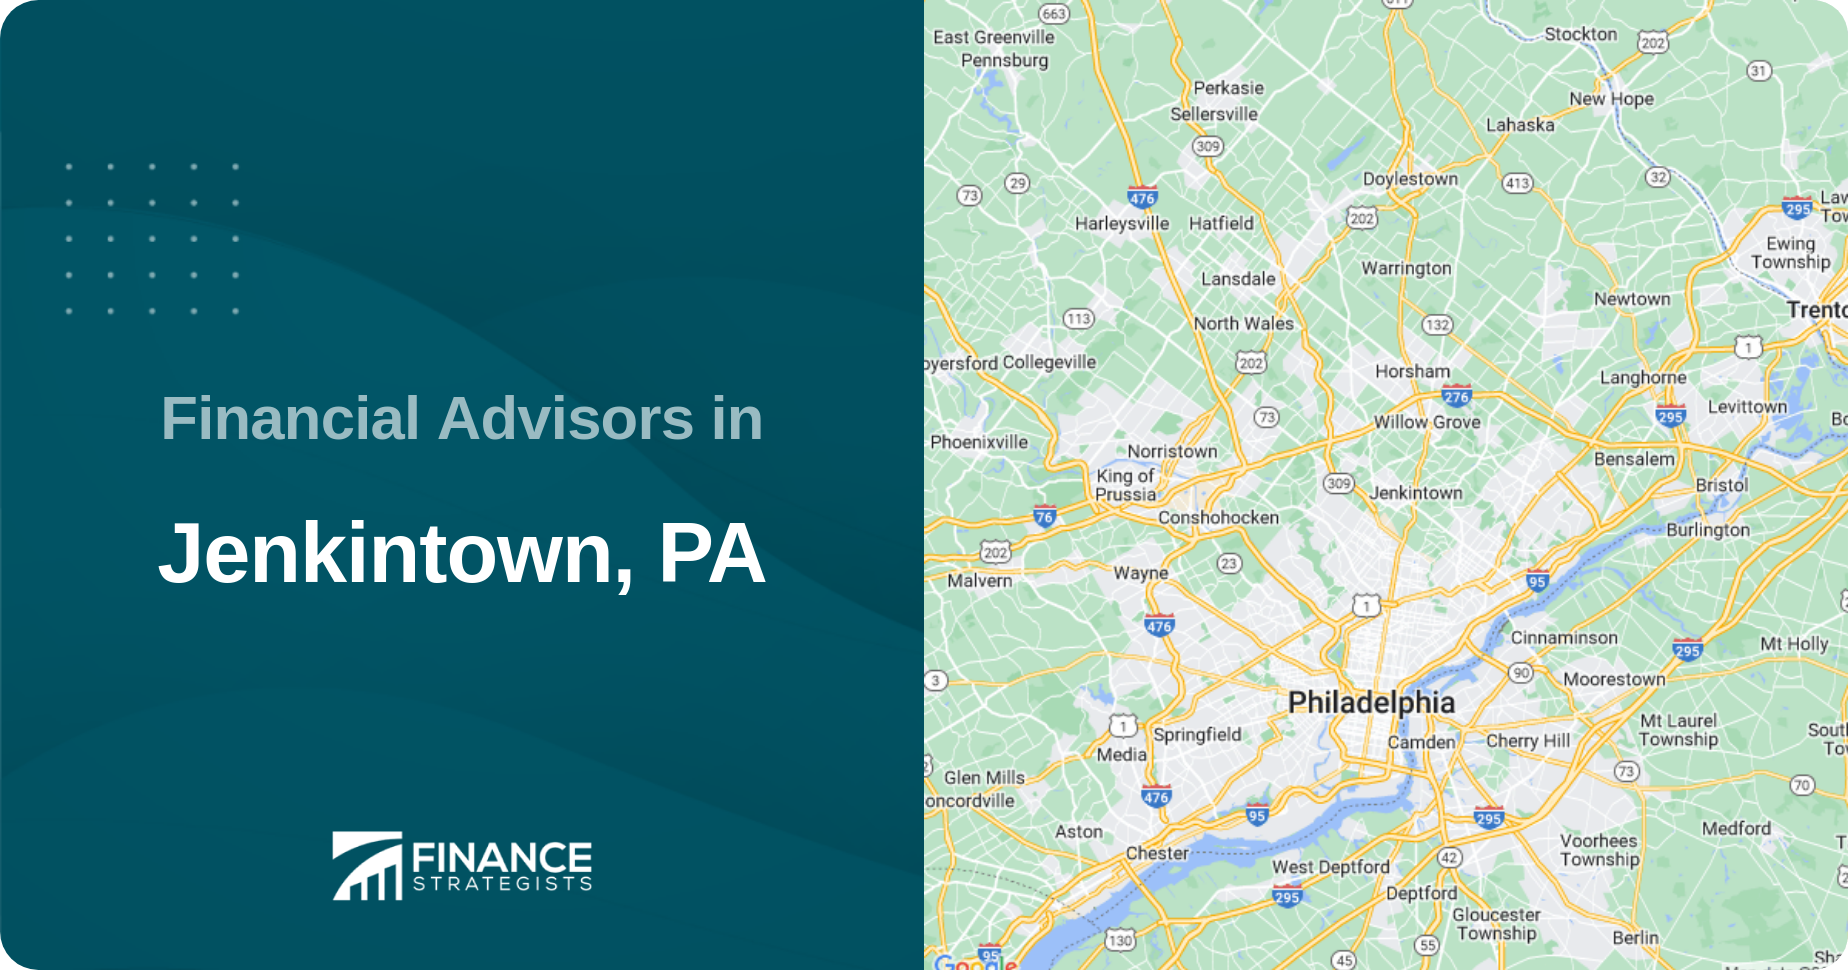 Financial Advisors in Jenkintown, PA